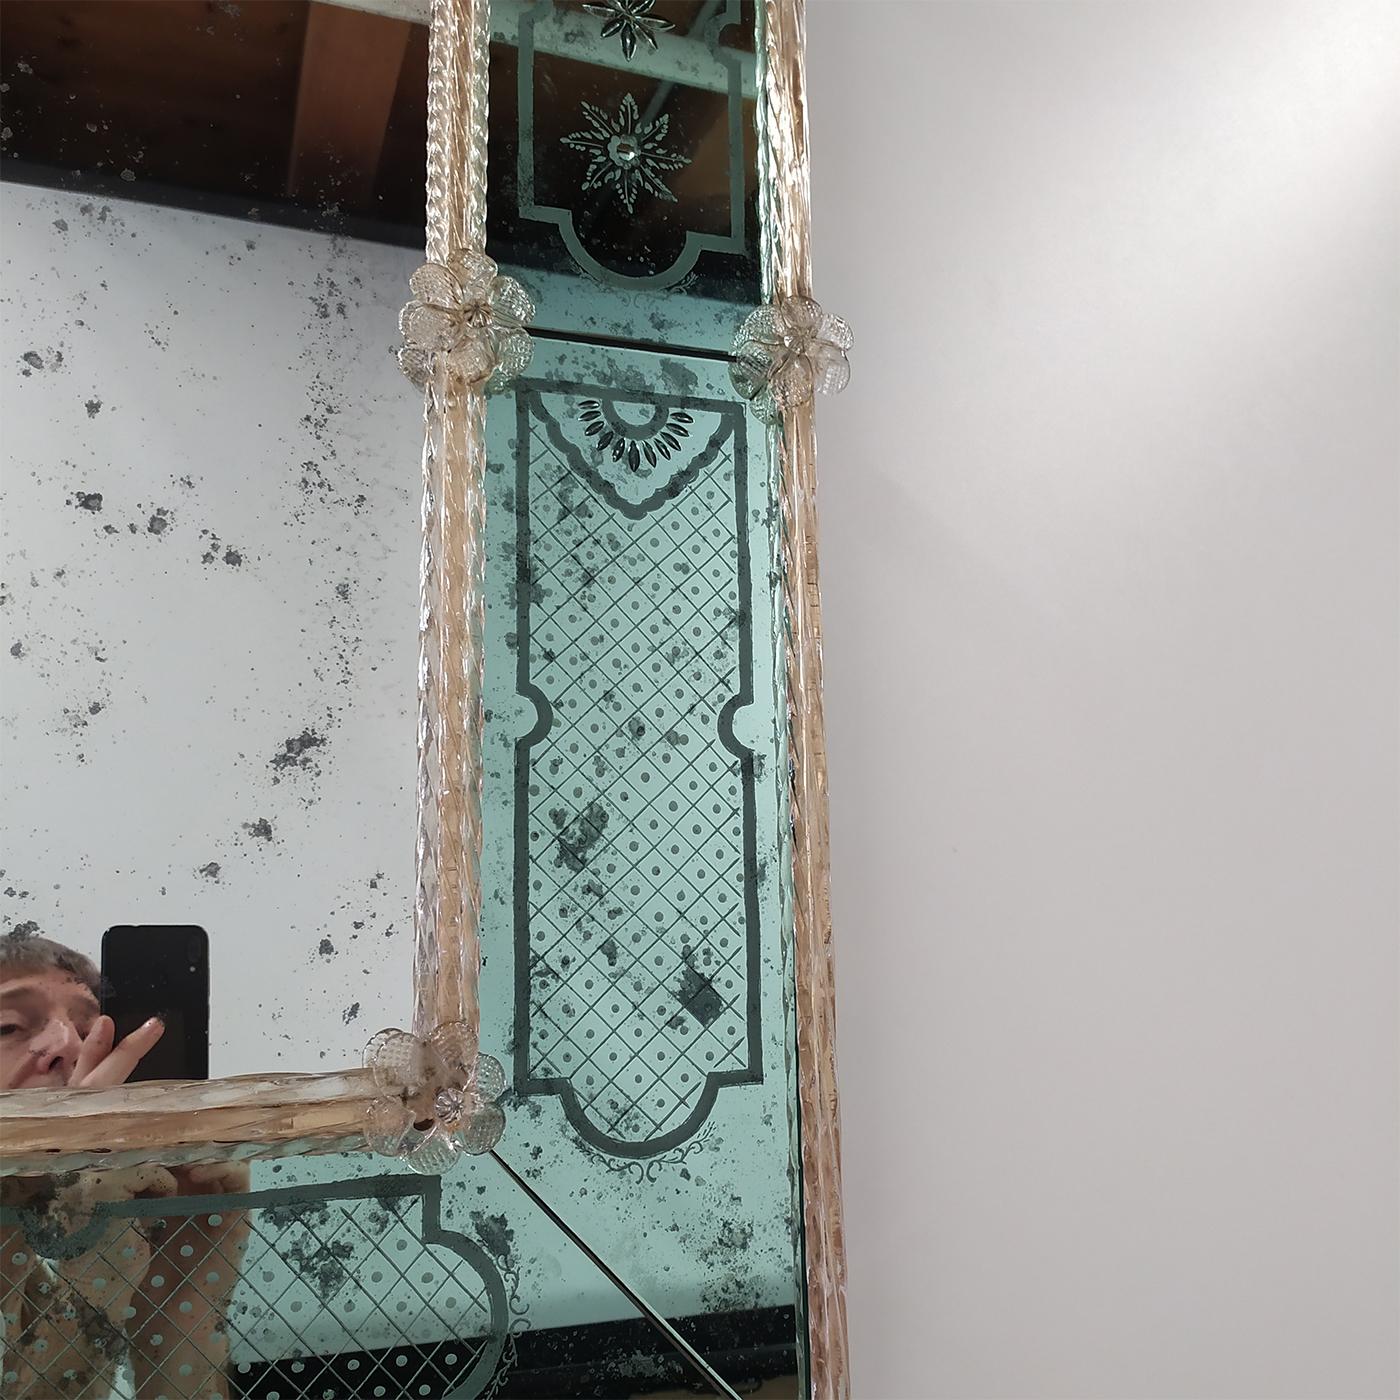 Ce meuble est une reproduction du typique miroir vénitien ancien en verre de Murano rectangulaire, argenté à l'ancienne entièrement produit au mercure. Cette technique est typique de la région vénitienne du XVIIIe siècle. Le cadre intérieur et